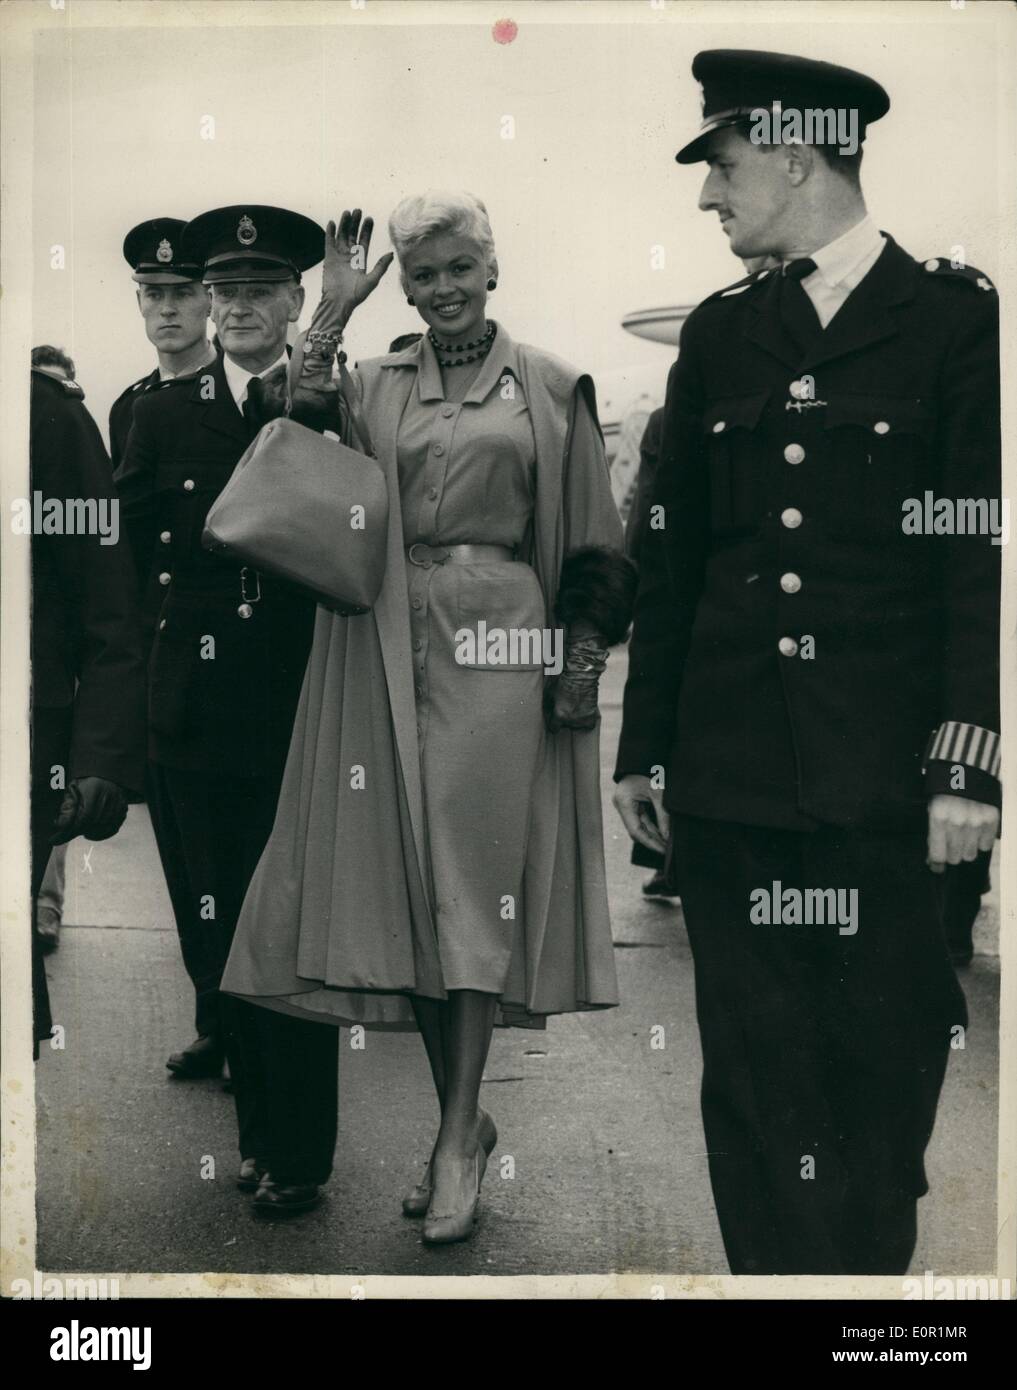 Sept. 09, 1957 - Jayne Mansfield ankommt: Hollywood-Filmstar Jayne Mansfield am Flughafen London ist heute angekommen. Sie ist an der morgigen Premiere ihres Films '' Oh! für einen Mann!'' Foto zeigt, gab es eine Polizei-Eskorte für Jayne Mansfield, wenn sie aus dem Flugzeug - Flughafen London heute ging. Stockfoto